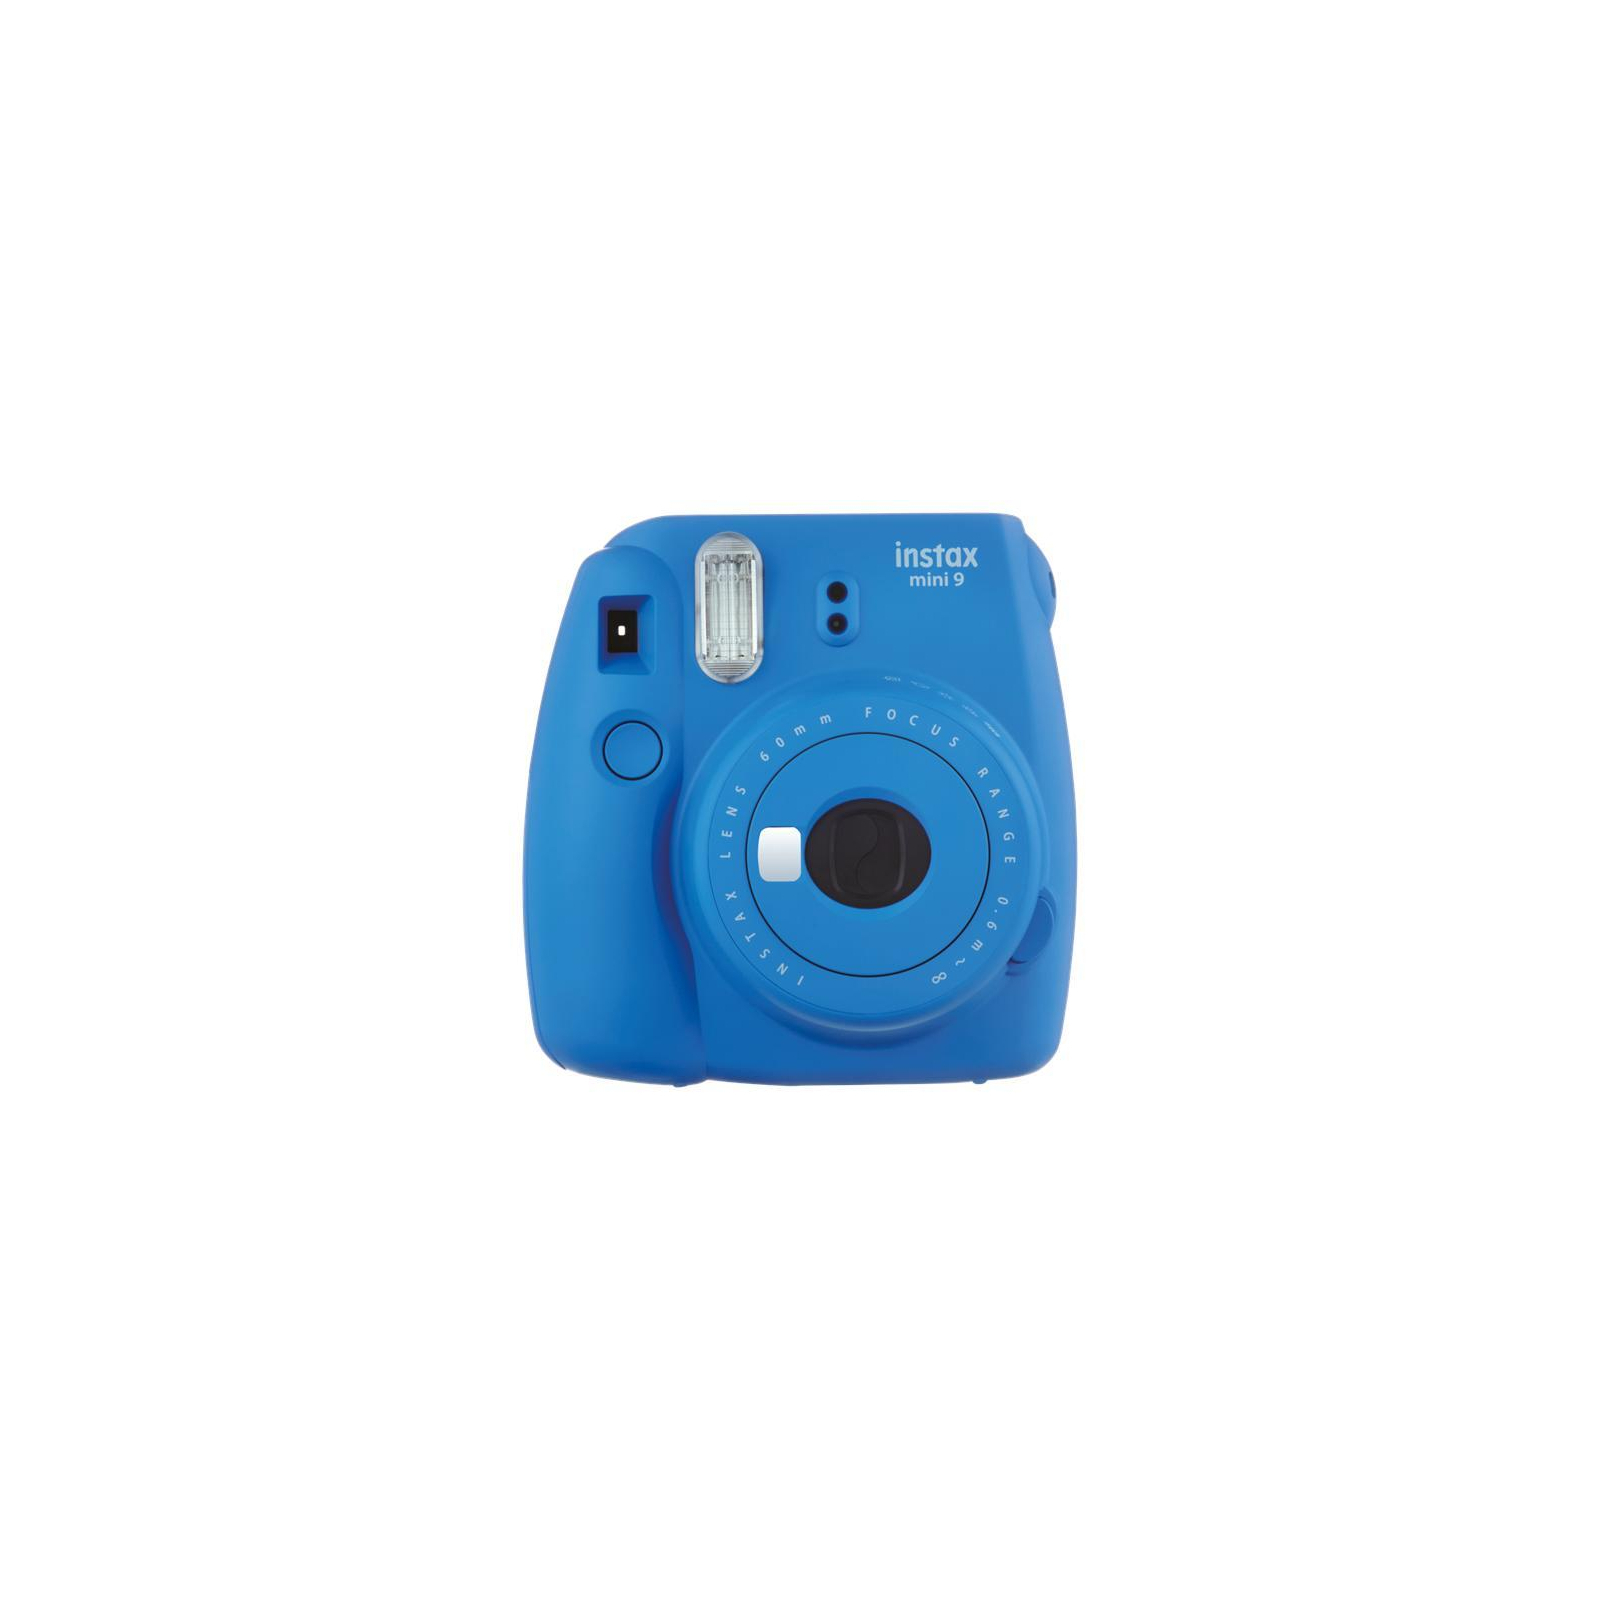 Камера миттєвого друку Fujifilm Instax Mini 9 CAMERA COB BLUE EX D N Синий Кобальт (16550564) зображення 2